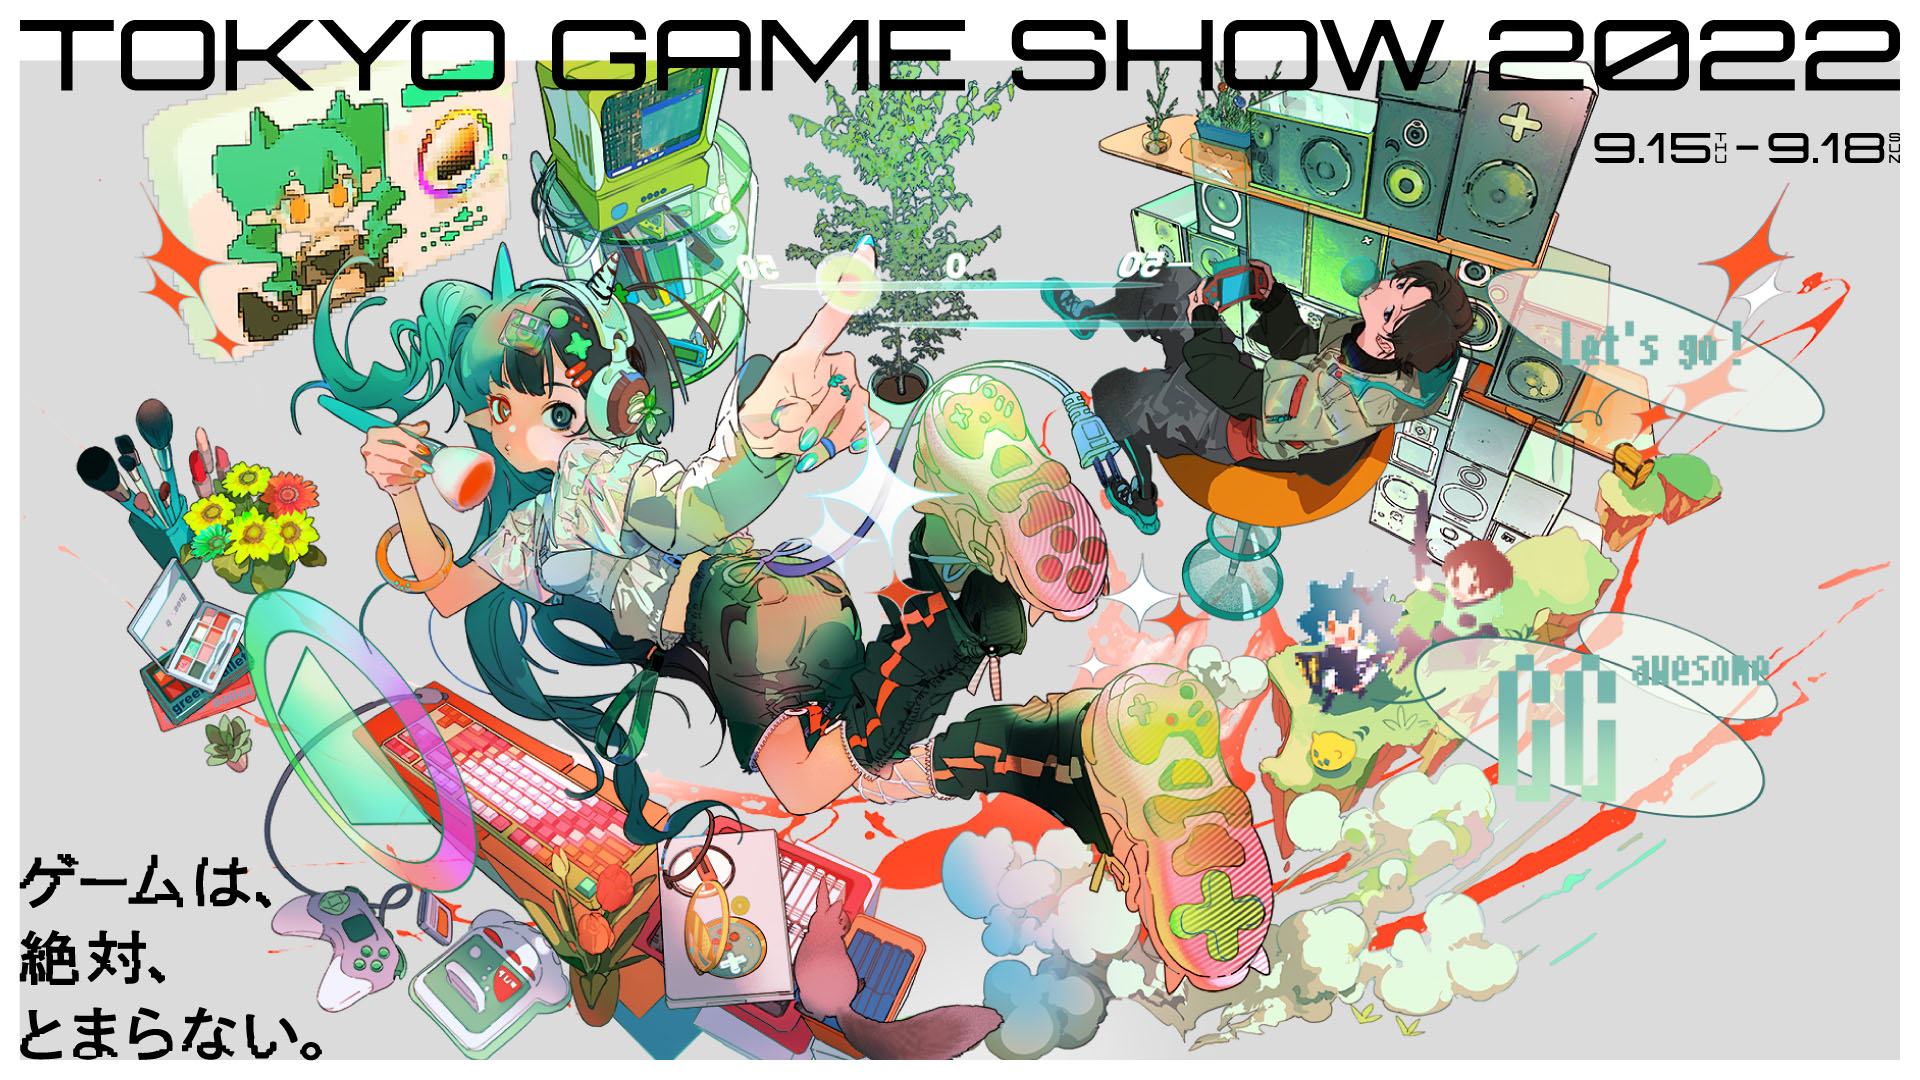 Tokyo Game Show 2022, visuel clé dévoilé : nouveaux détails sur les exposants